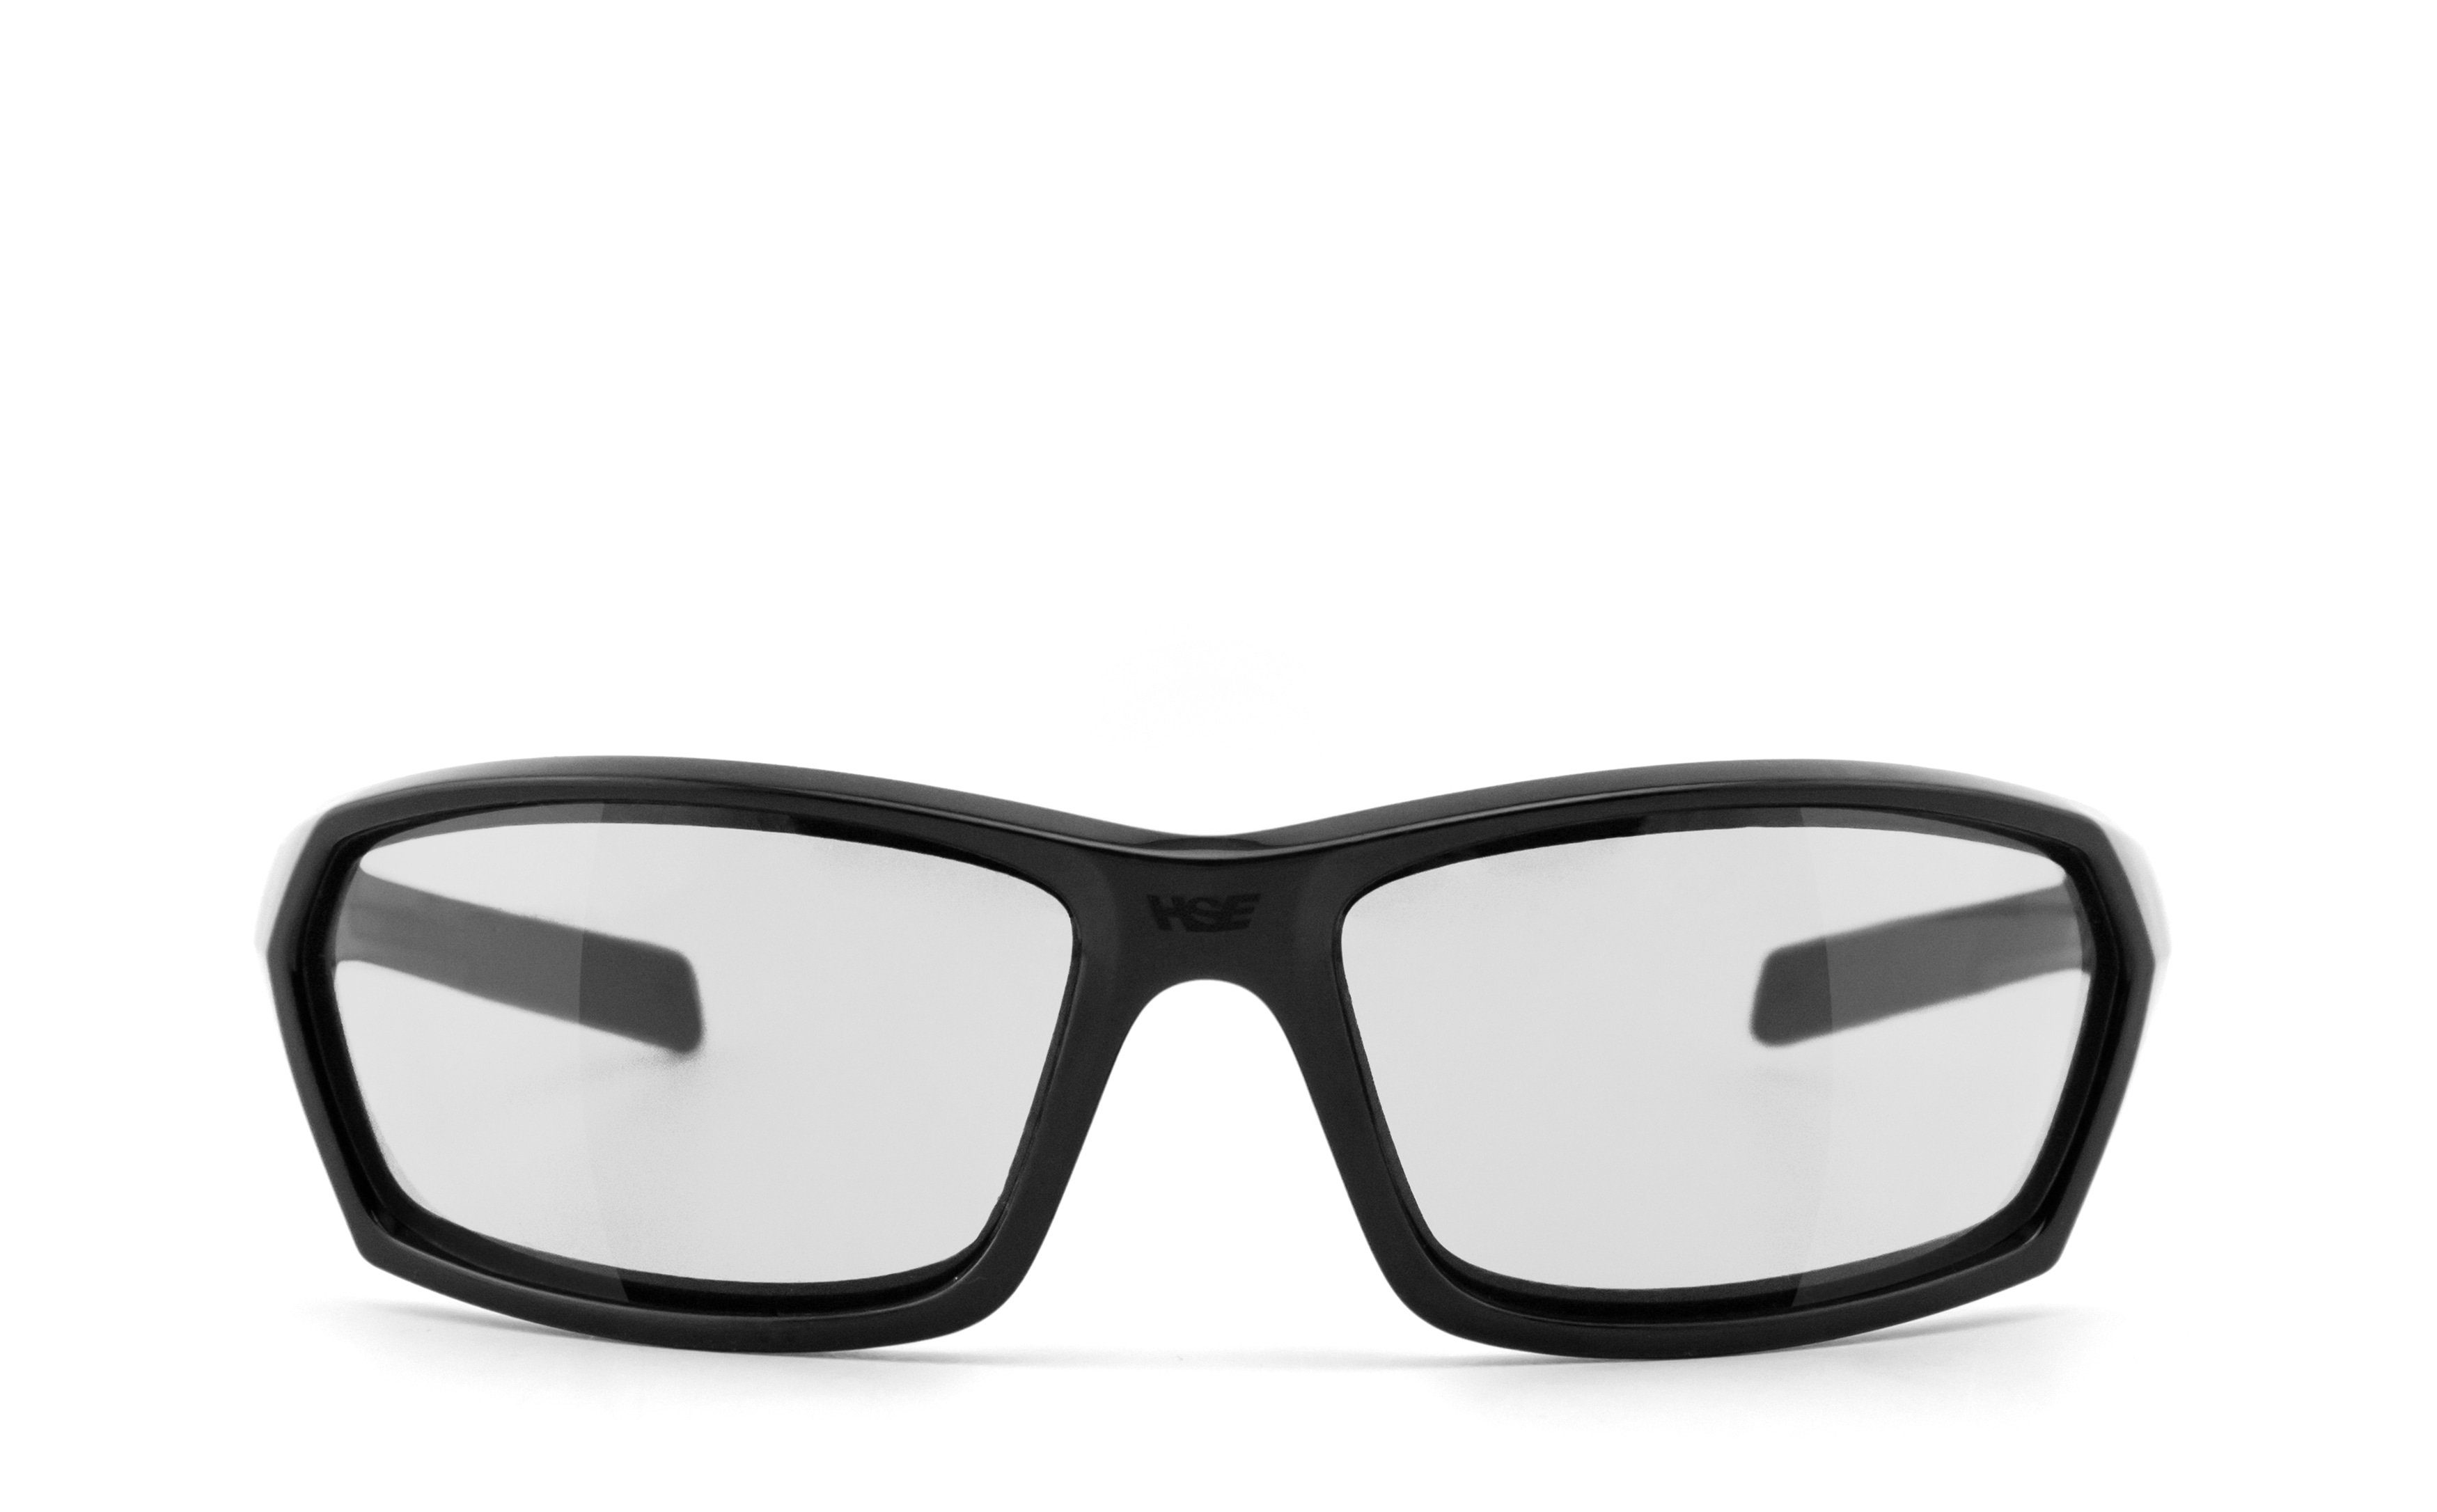 HSE - Gläser - selbsttönend, AIR-STREAM Sportbrille SportEyes Selbsttönende